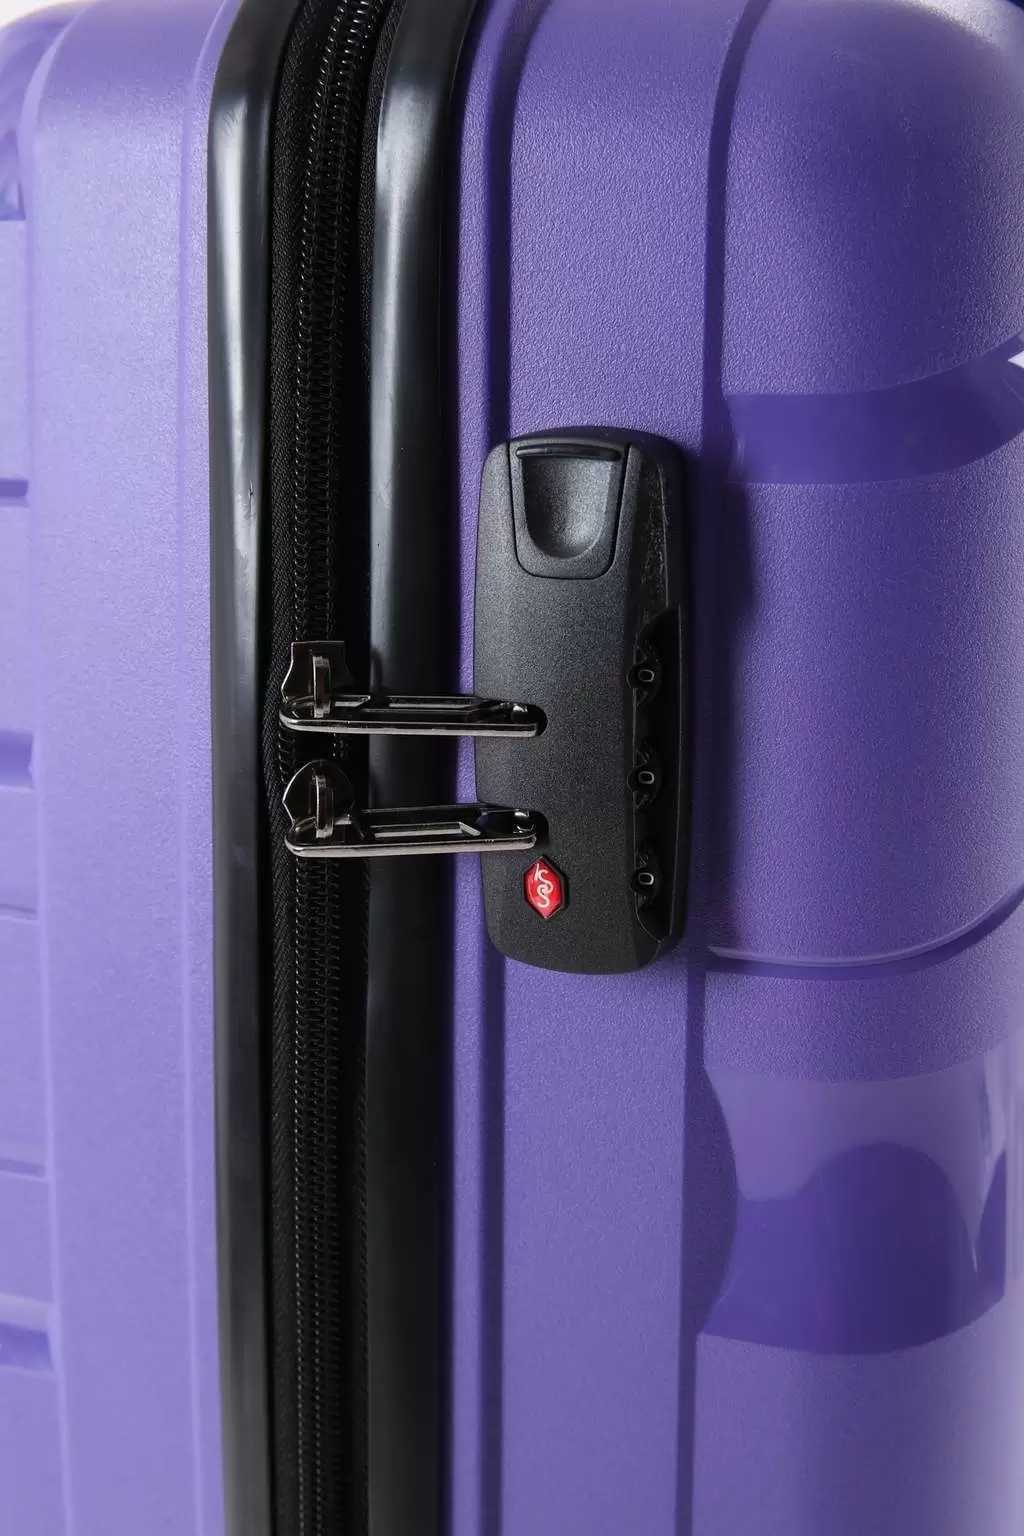 Комплект чемоданов CCS 5223 Set, фиолетовый